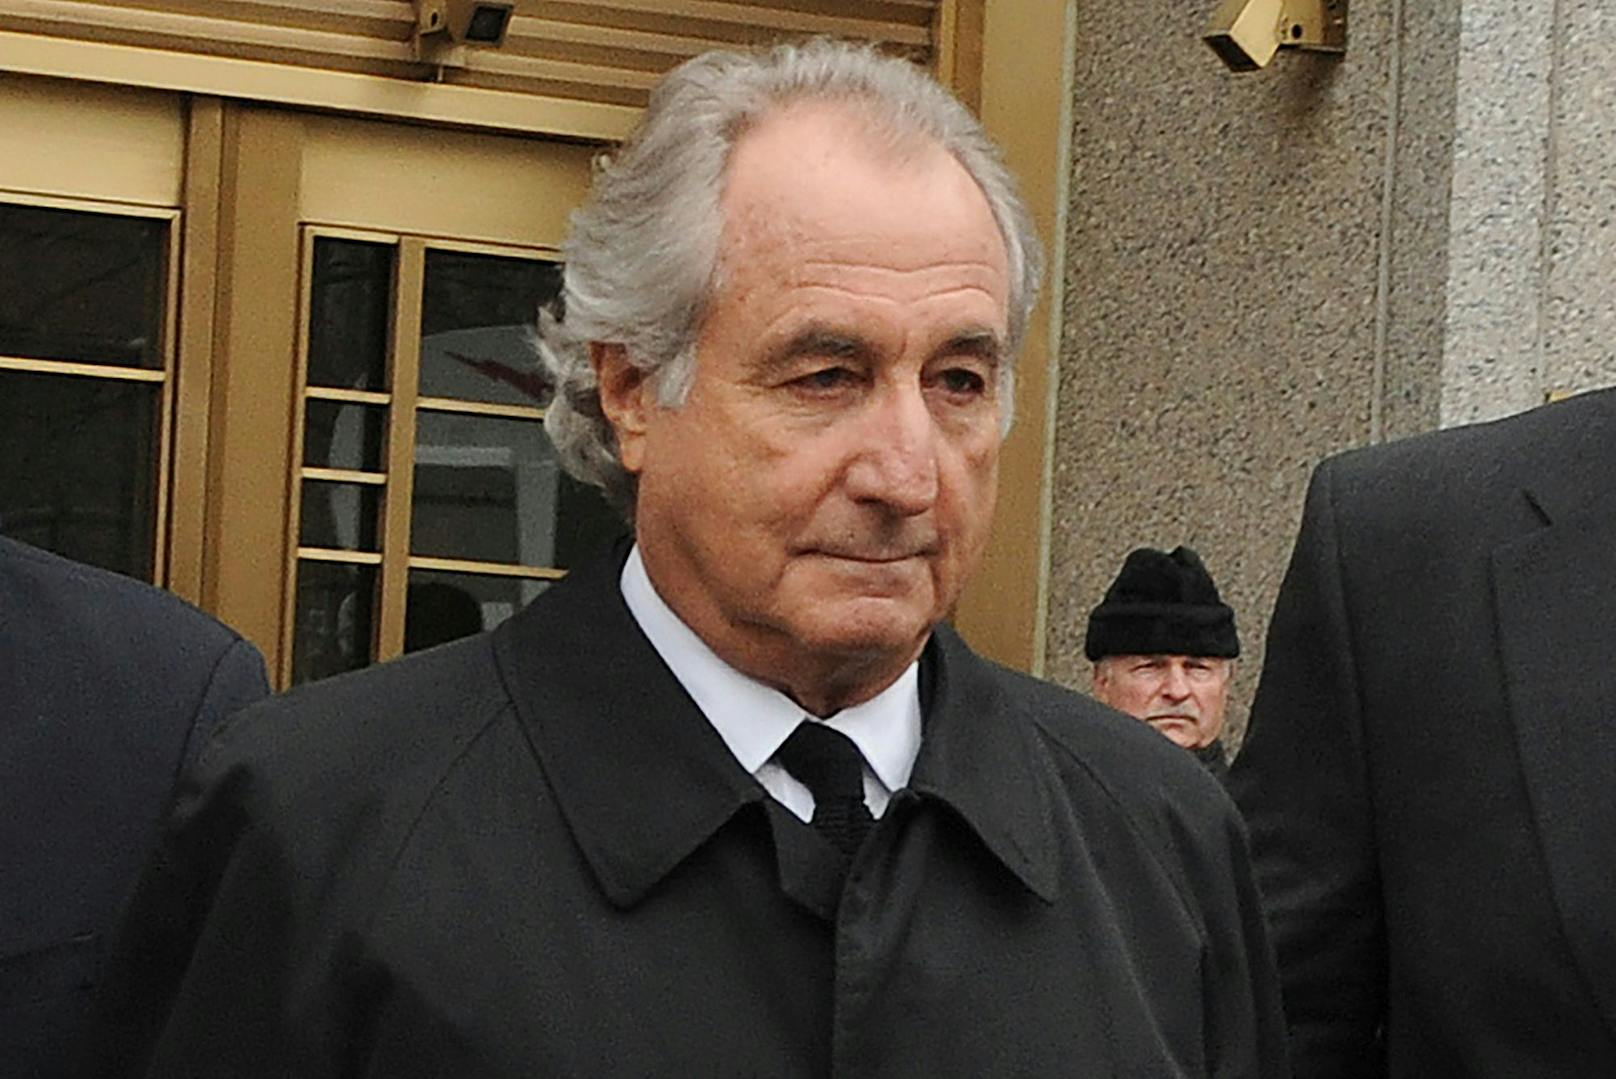 Bernard "Bernie" Madoff 2009 nach einer Gerichtsverhandlung in den USA.